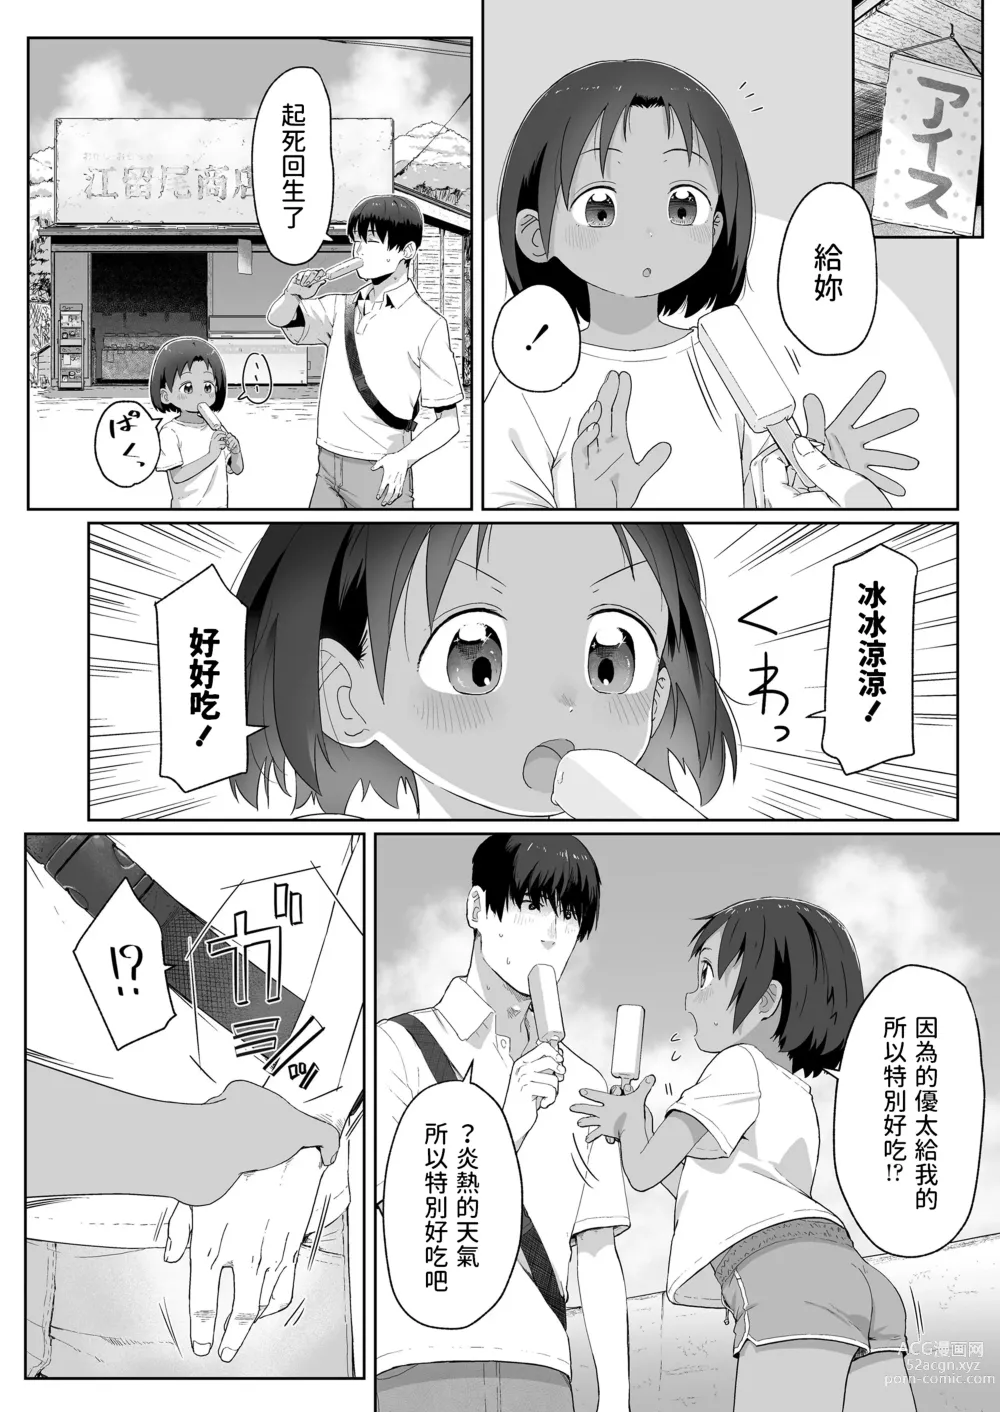 Page 4 of manga Ano Natsu no Hanashi